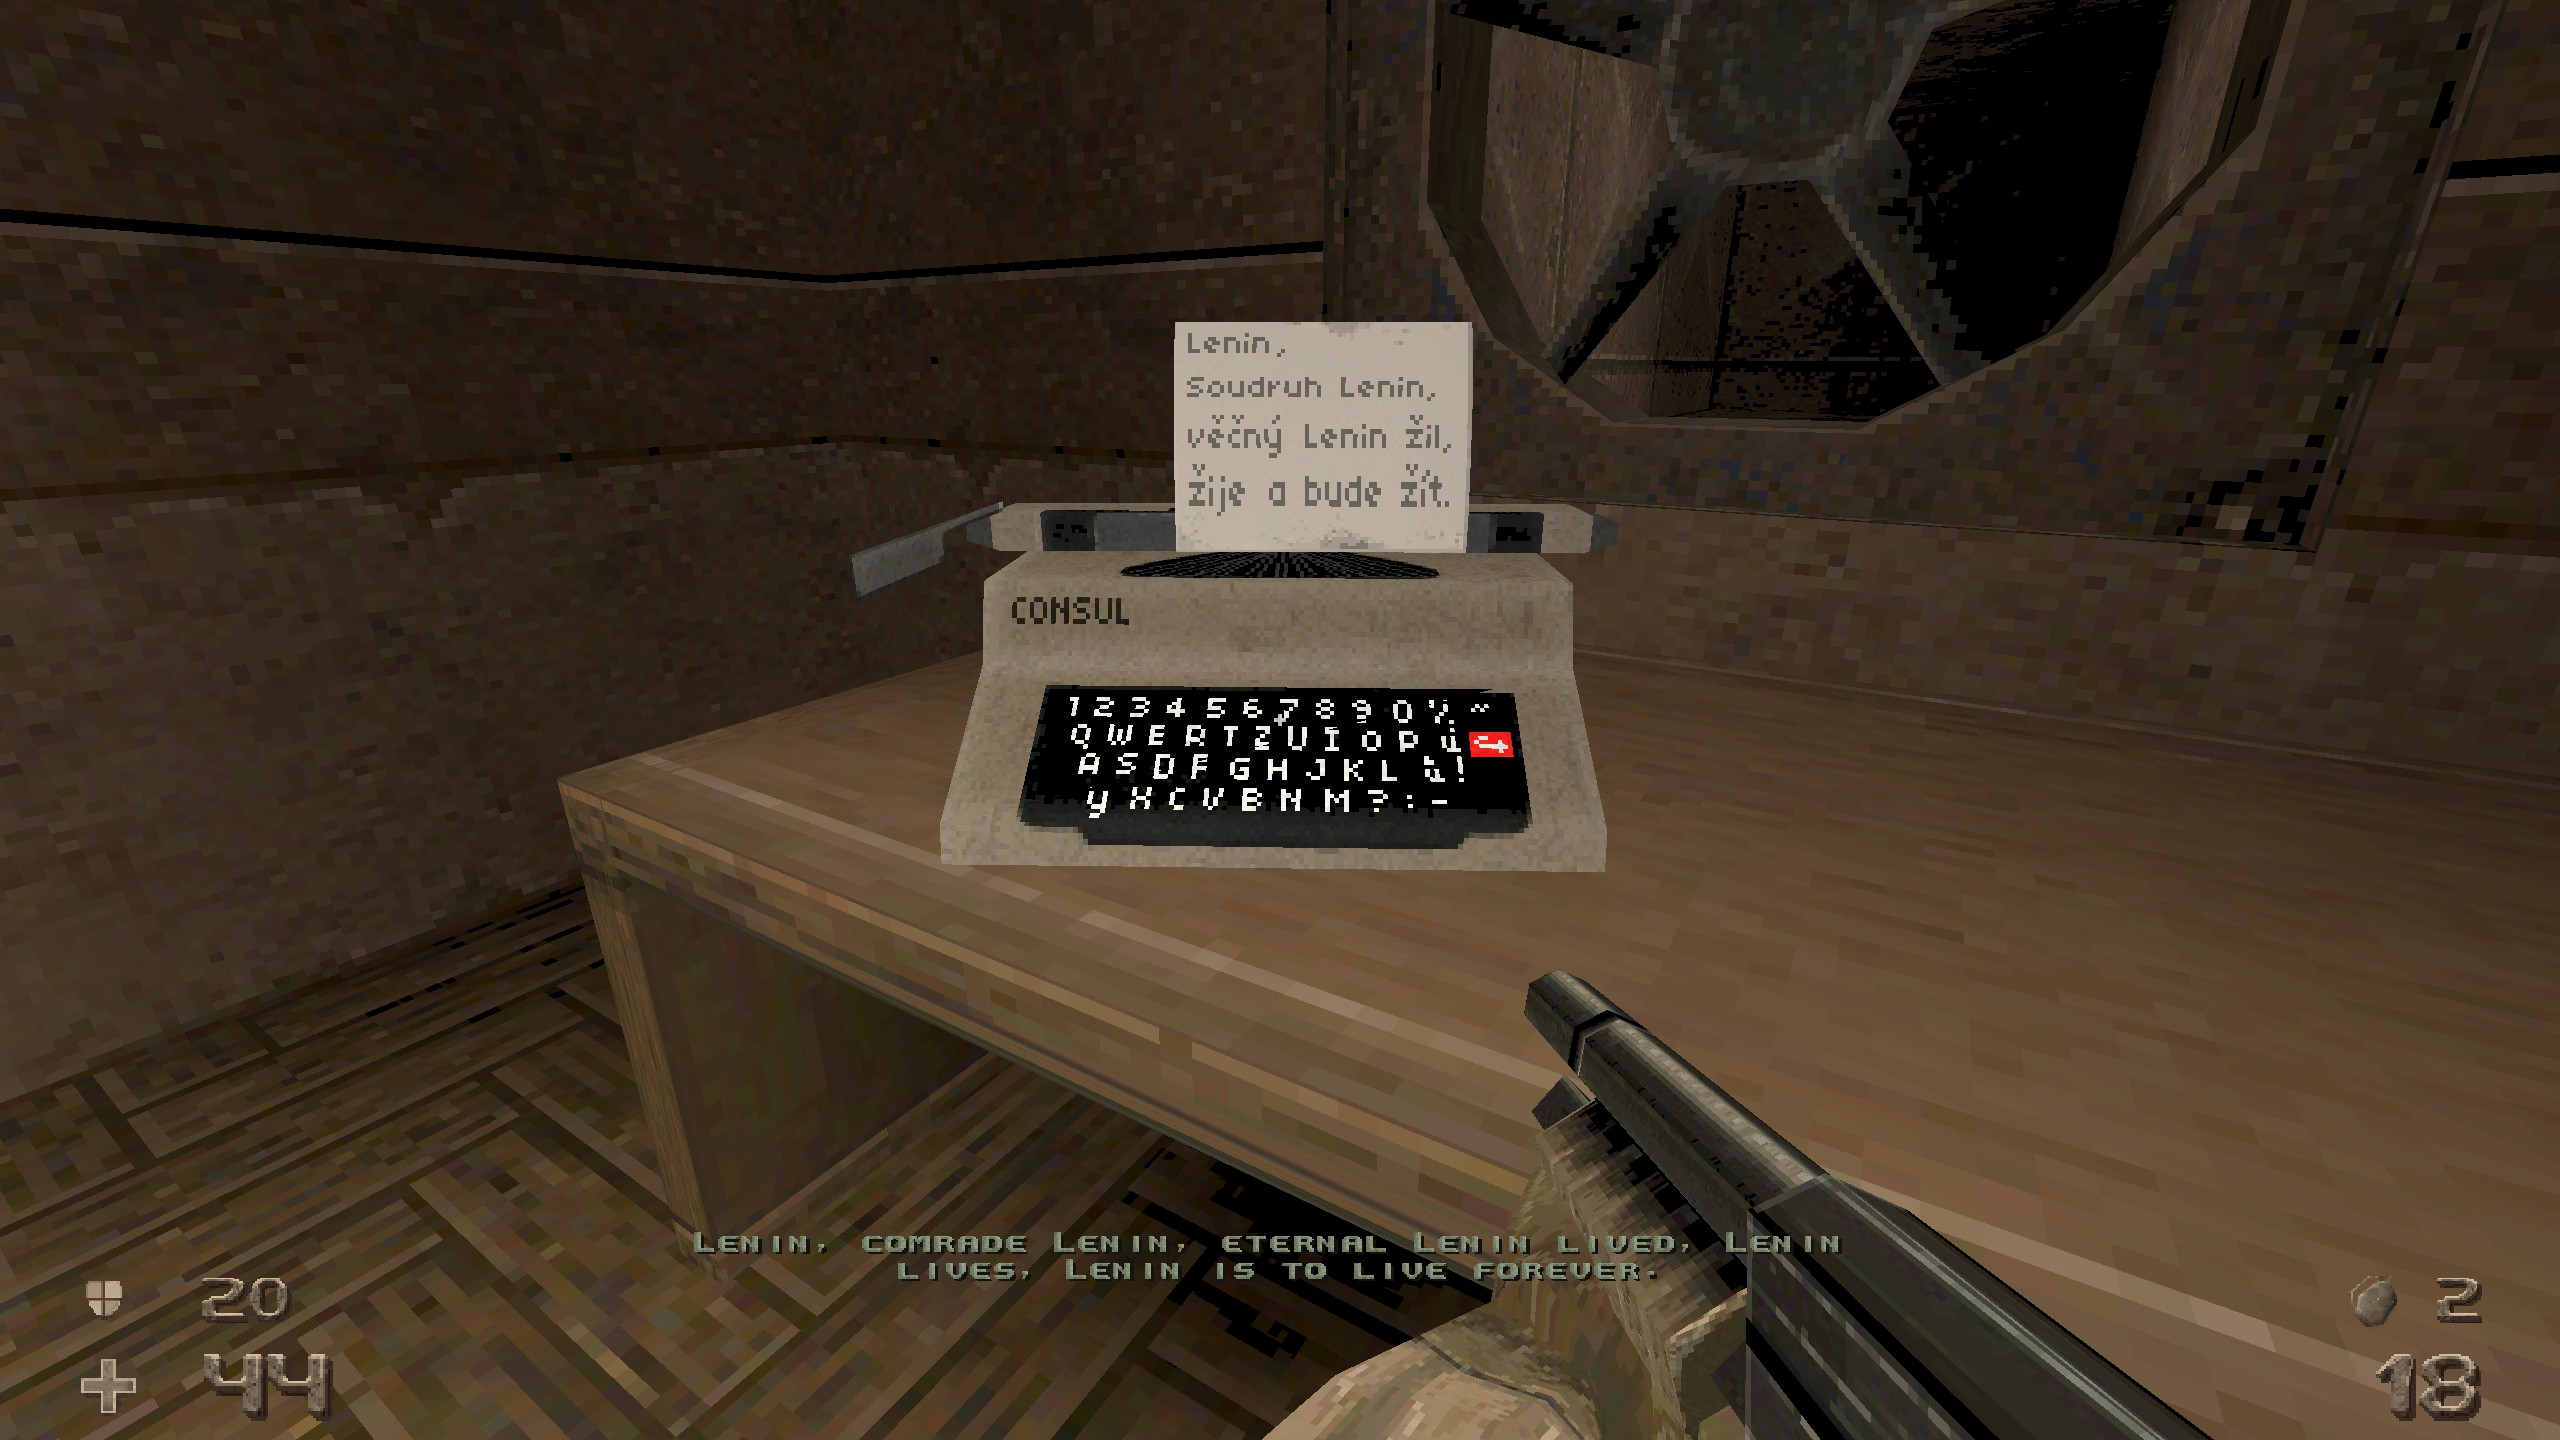 typewriter in hrot with text praising Lenin